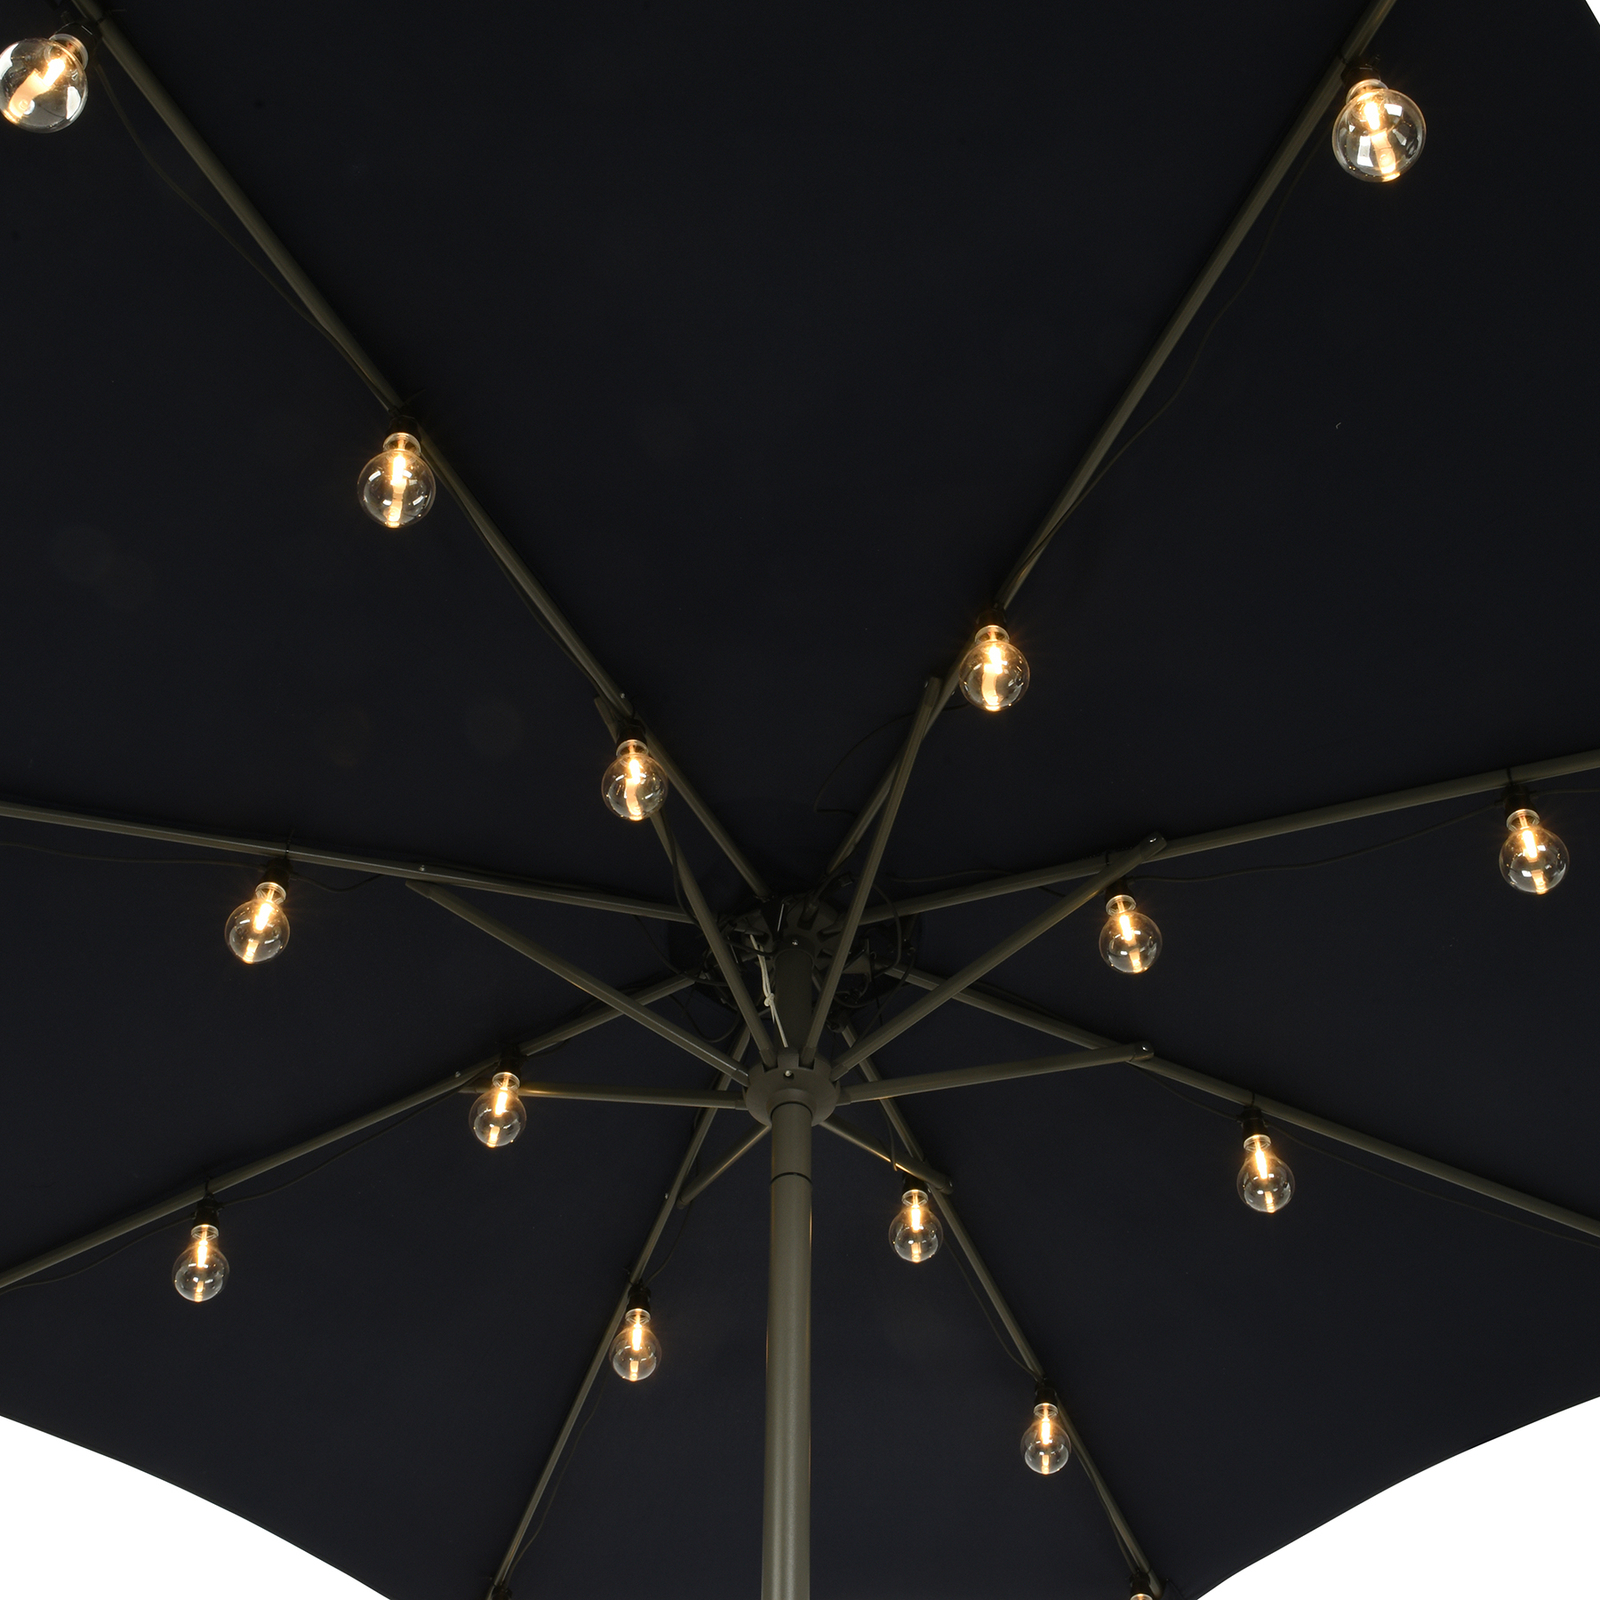 490145 LED string lights for parasols filament